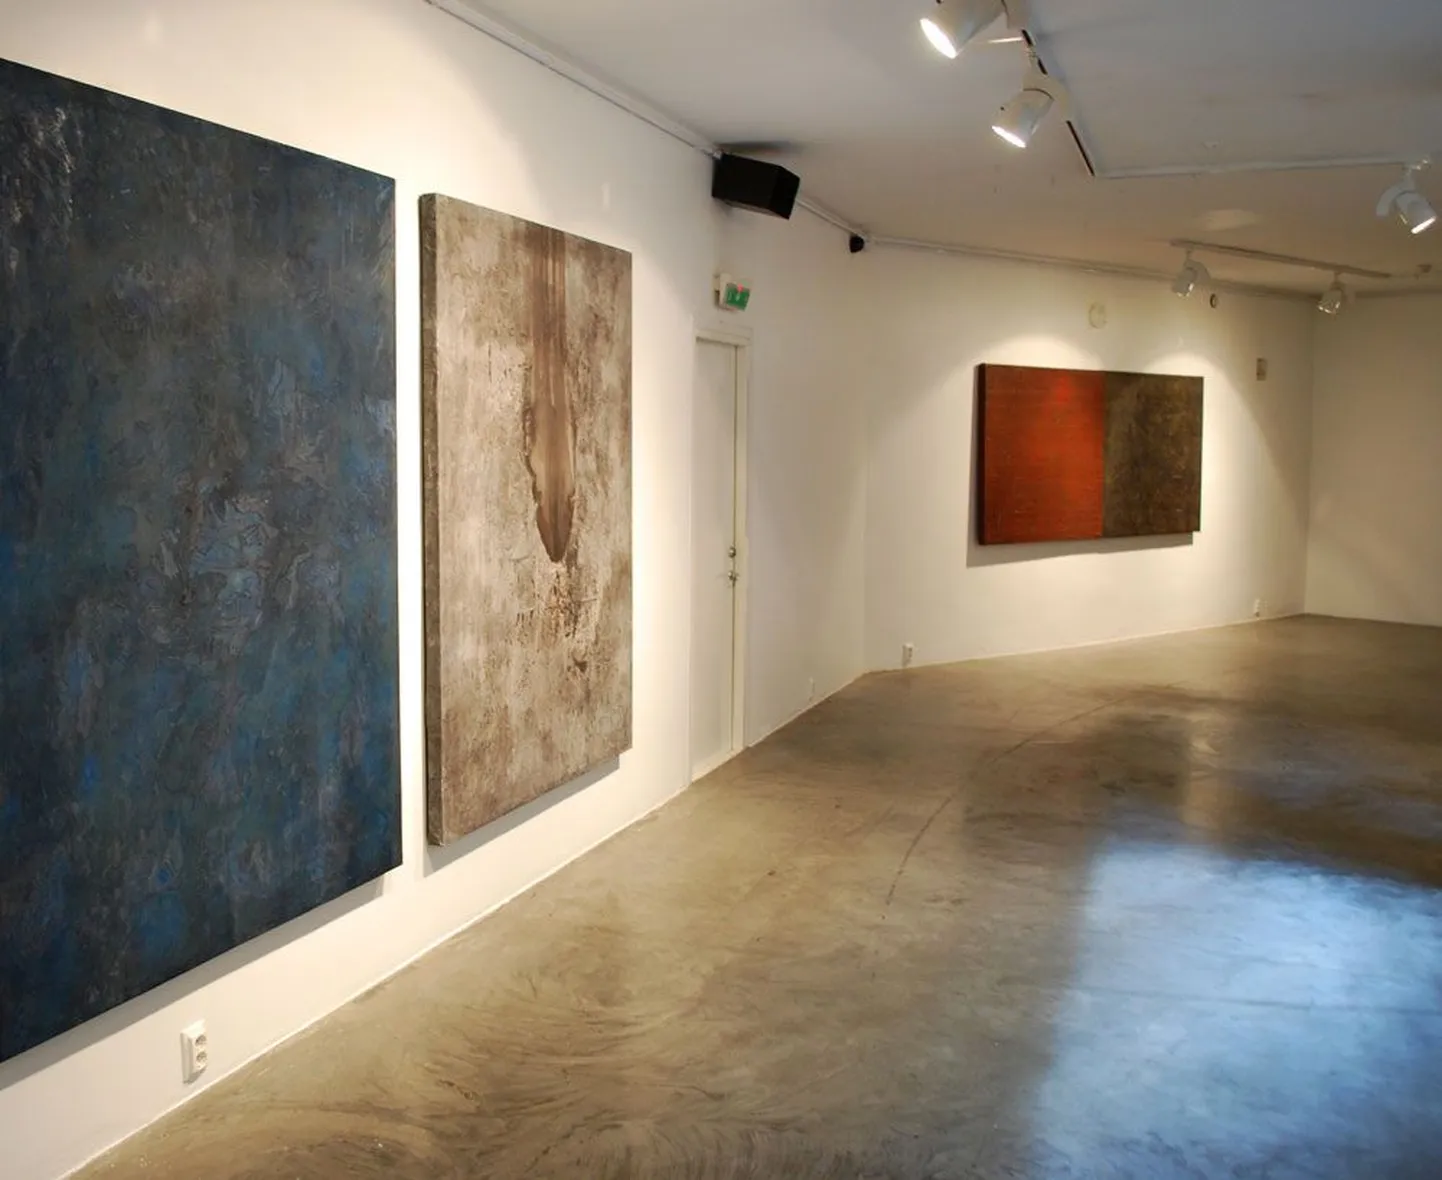 Lõputu tee ja kulgemine on Andres Koorti näituse «Tasane maal» teemad.